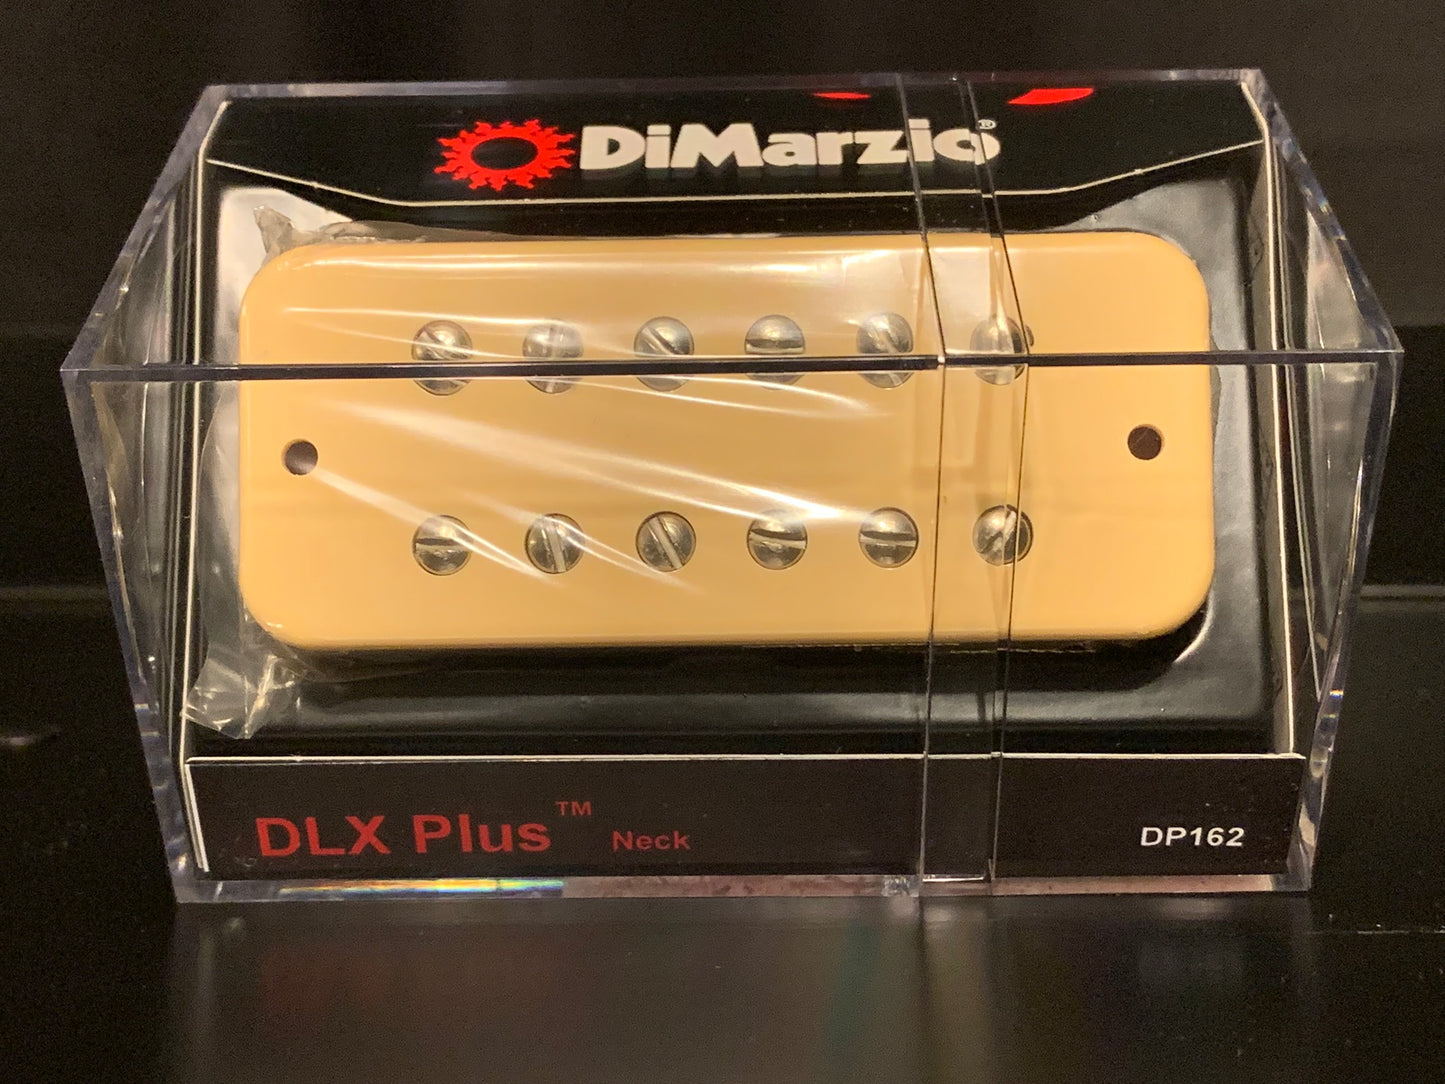 DiMarzio DP162 DLX Plus Neck Guitar Pickup DP162CR Cream